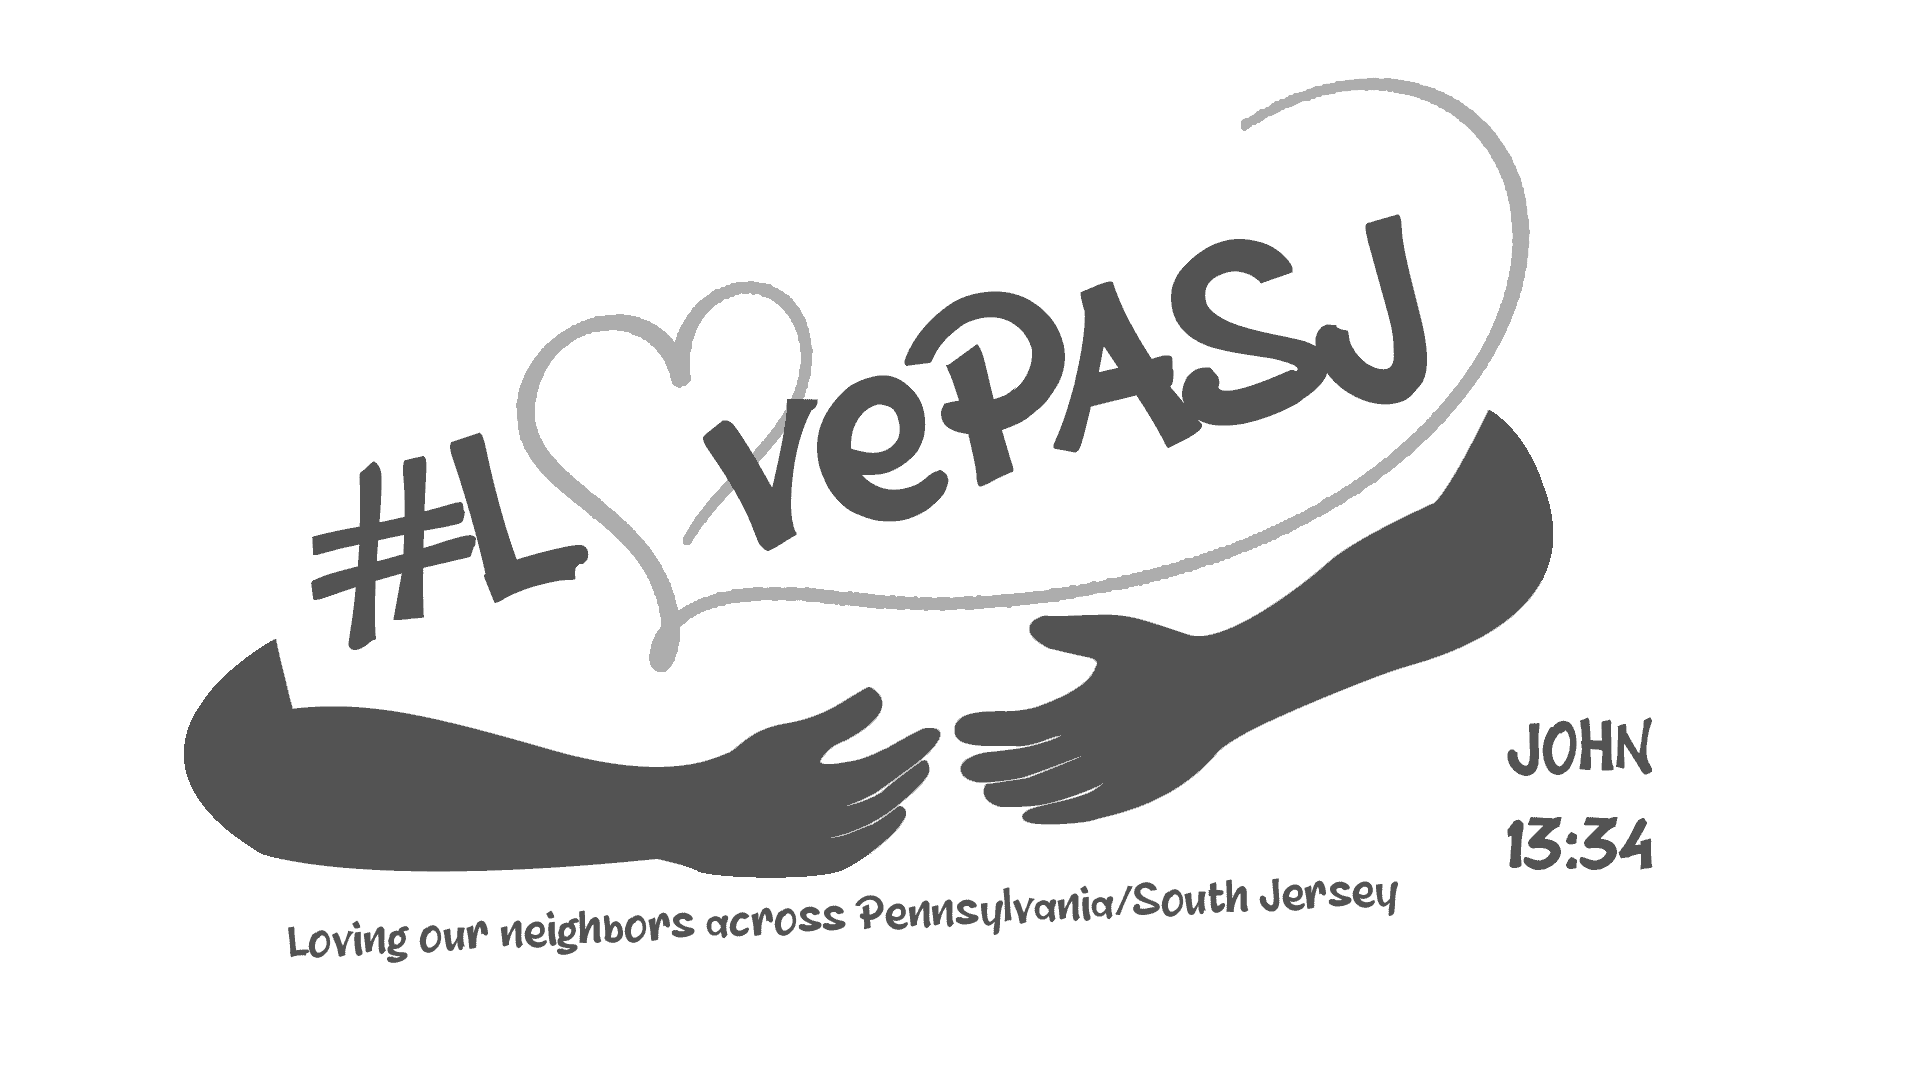 LovePASJ logo (white-gray-tag)